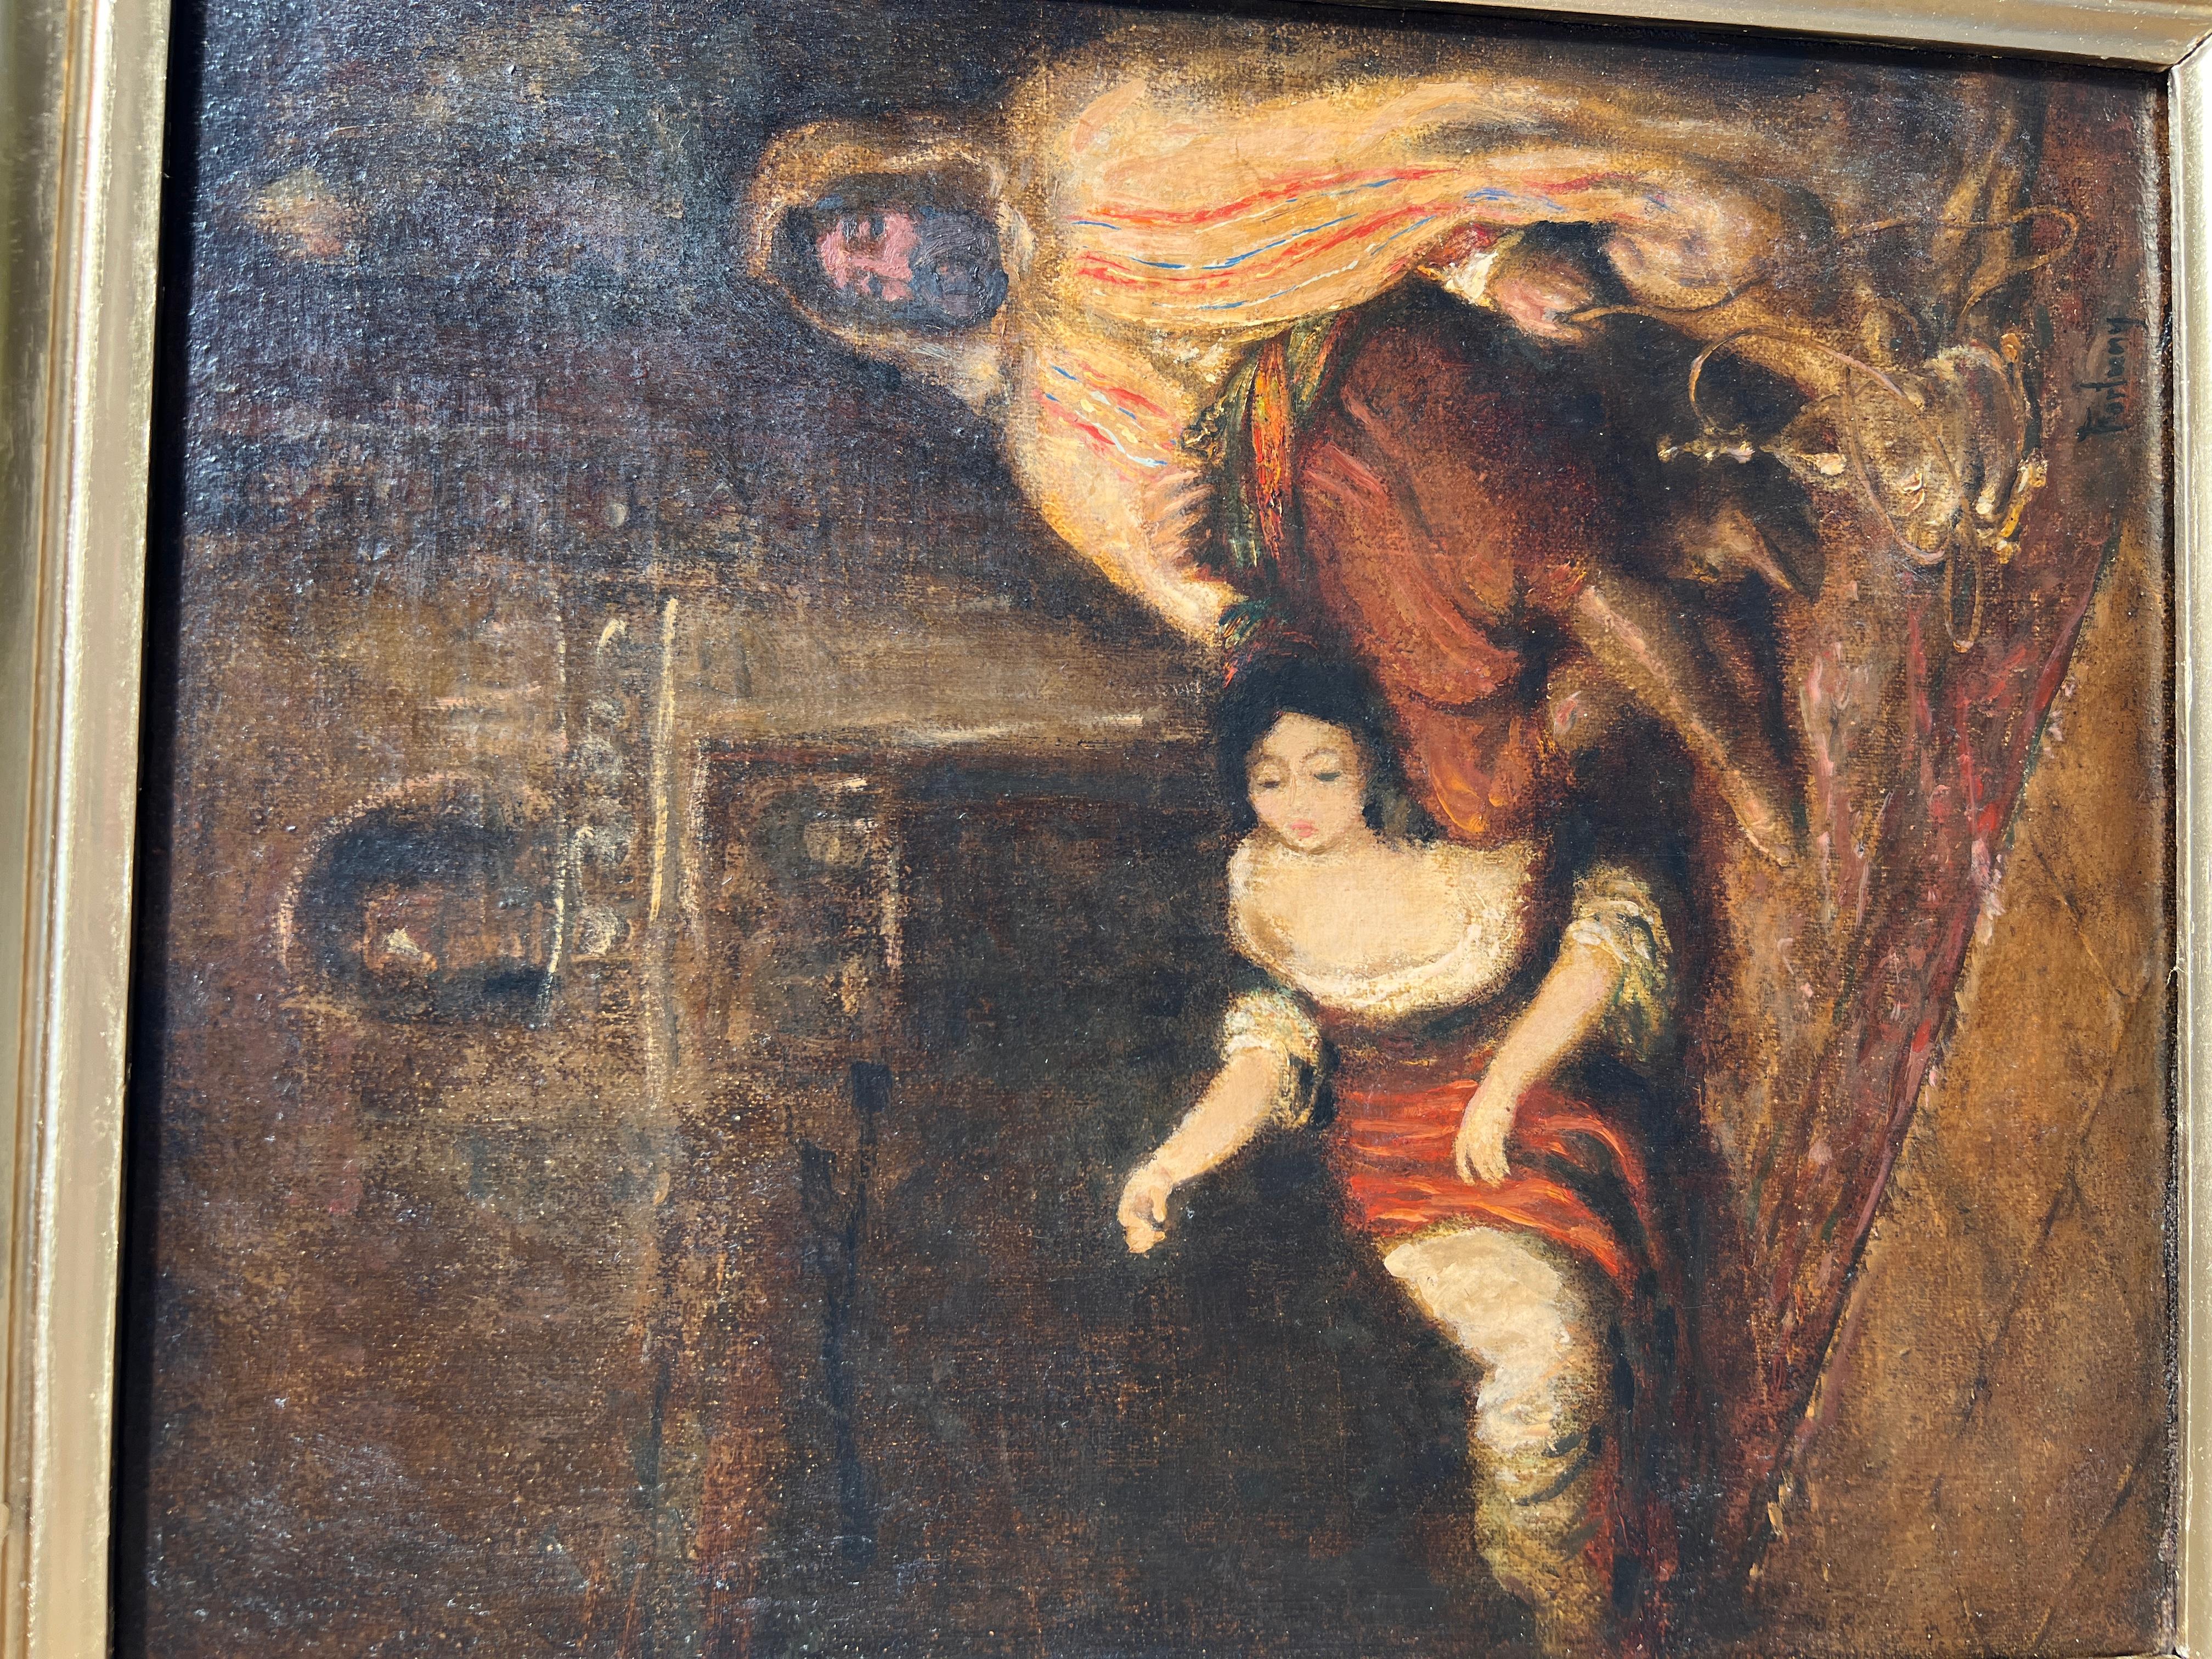 OIL SUR CANvas du 19ème Siècle, SCENE D'INTÉRIEUR ORIENTALISTE AVEC FIGURES, SIGNÉE FORtunY - Impressionnisme Painting par Fortuny